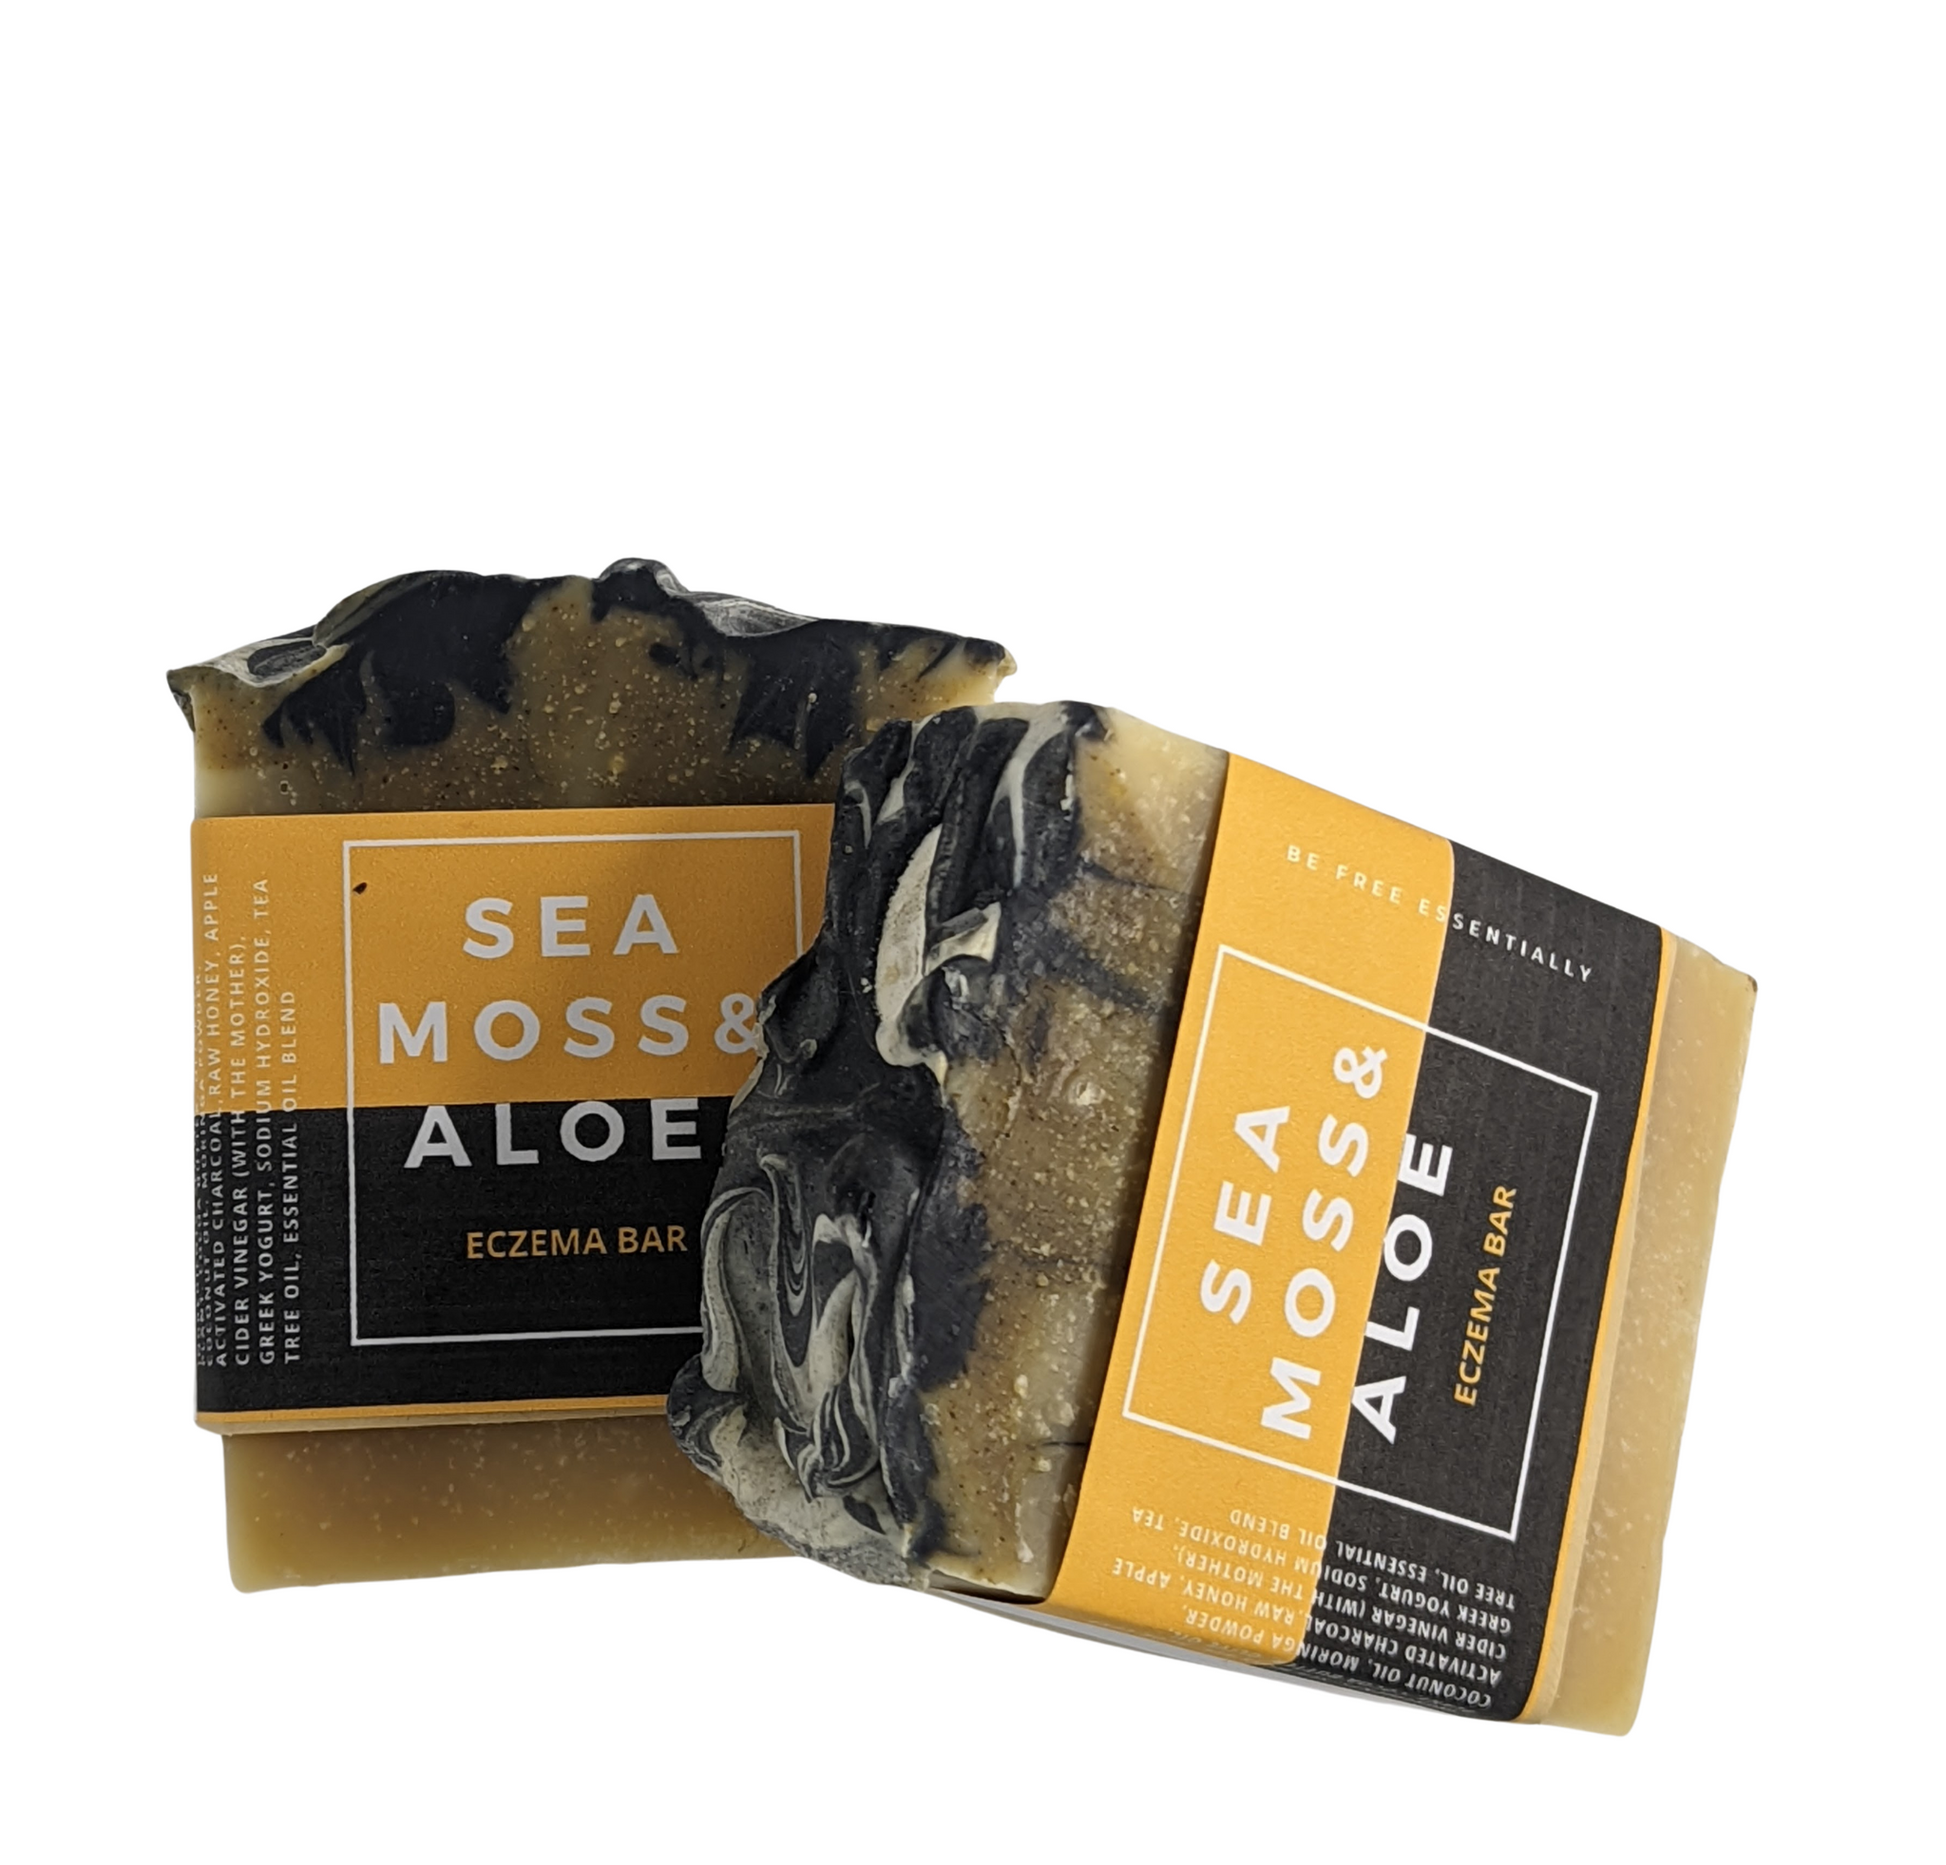 Sea Moss & Aloe Bars